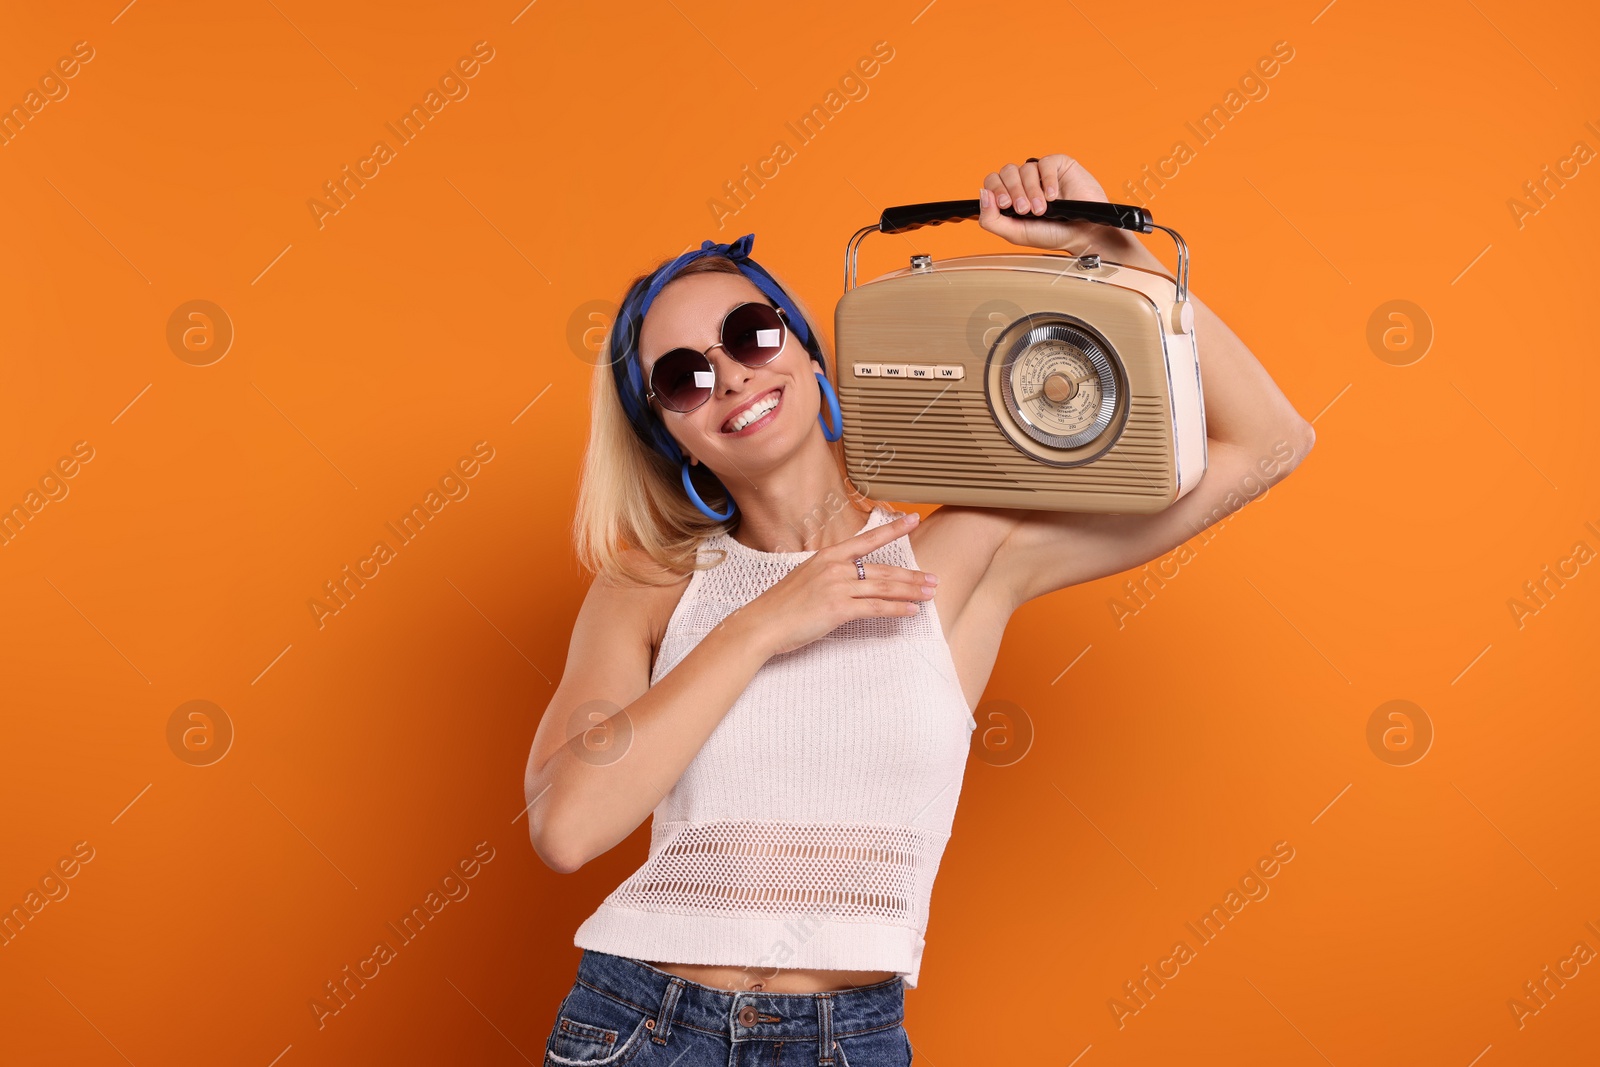 Photo of Happy hippie woman with retro radio receiver on orange background